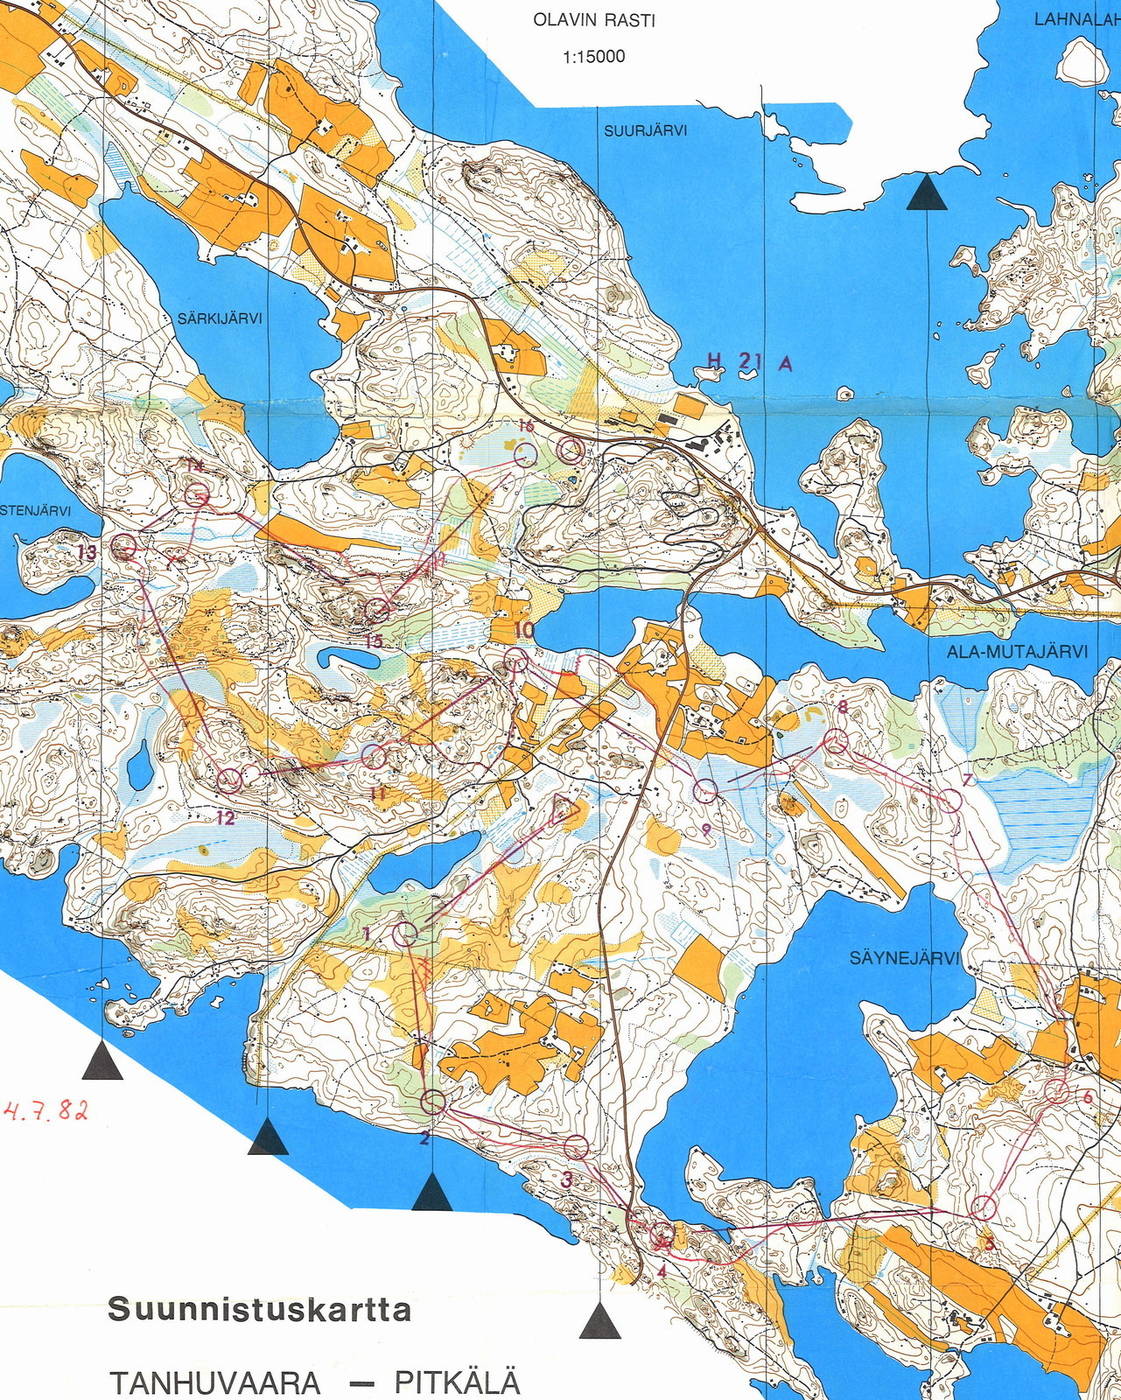 Savonlinnan kansalliset, H21A, 11,2 km (04/07/1982)